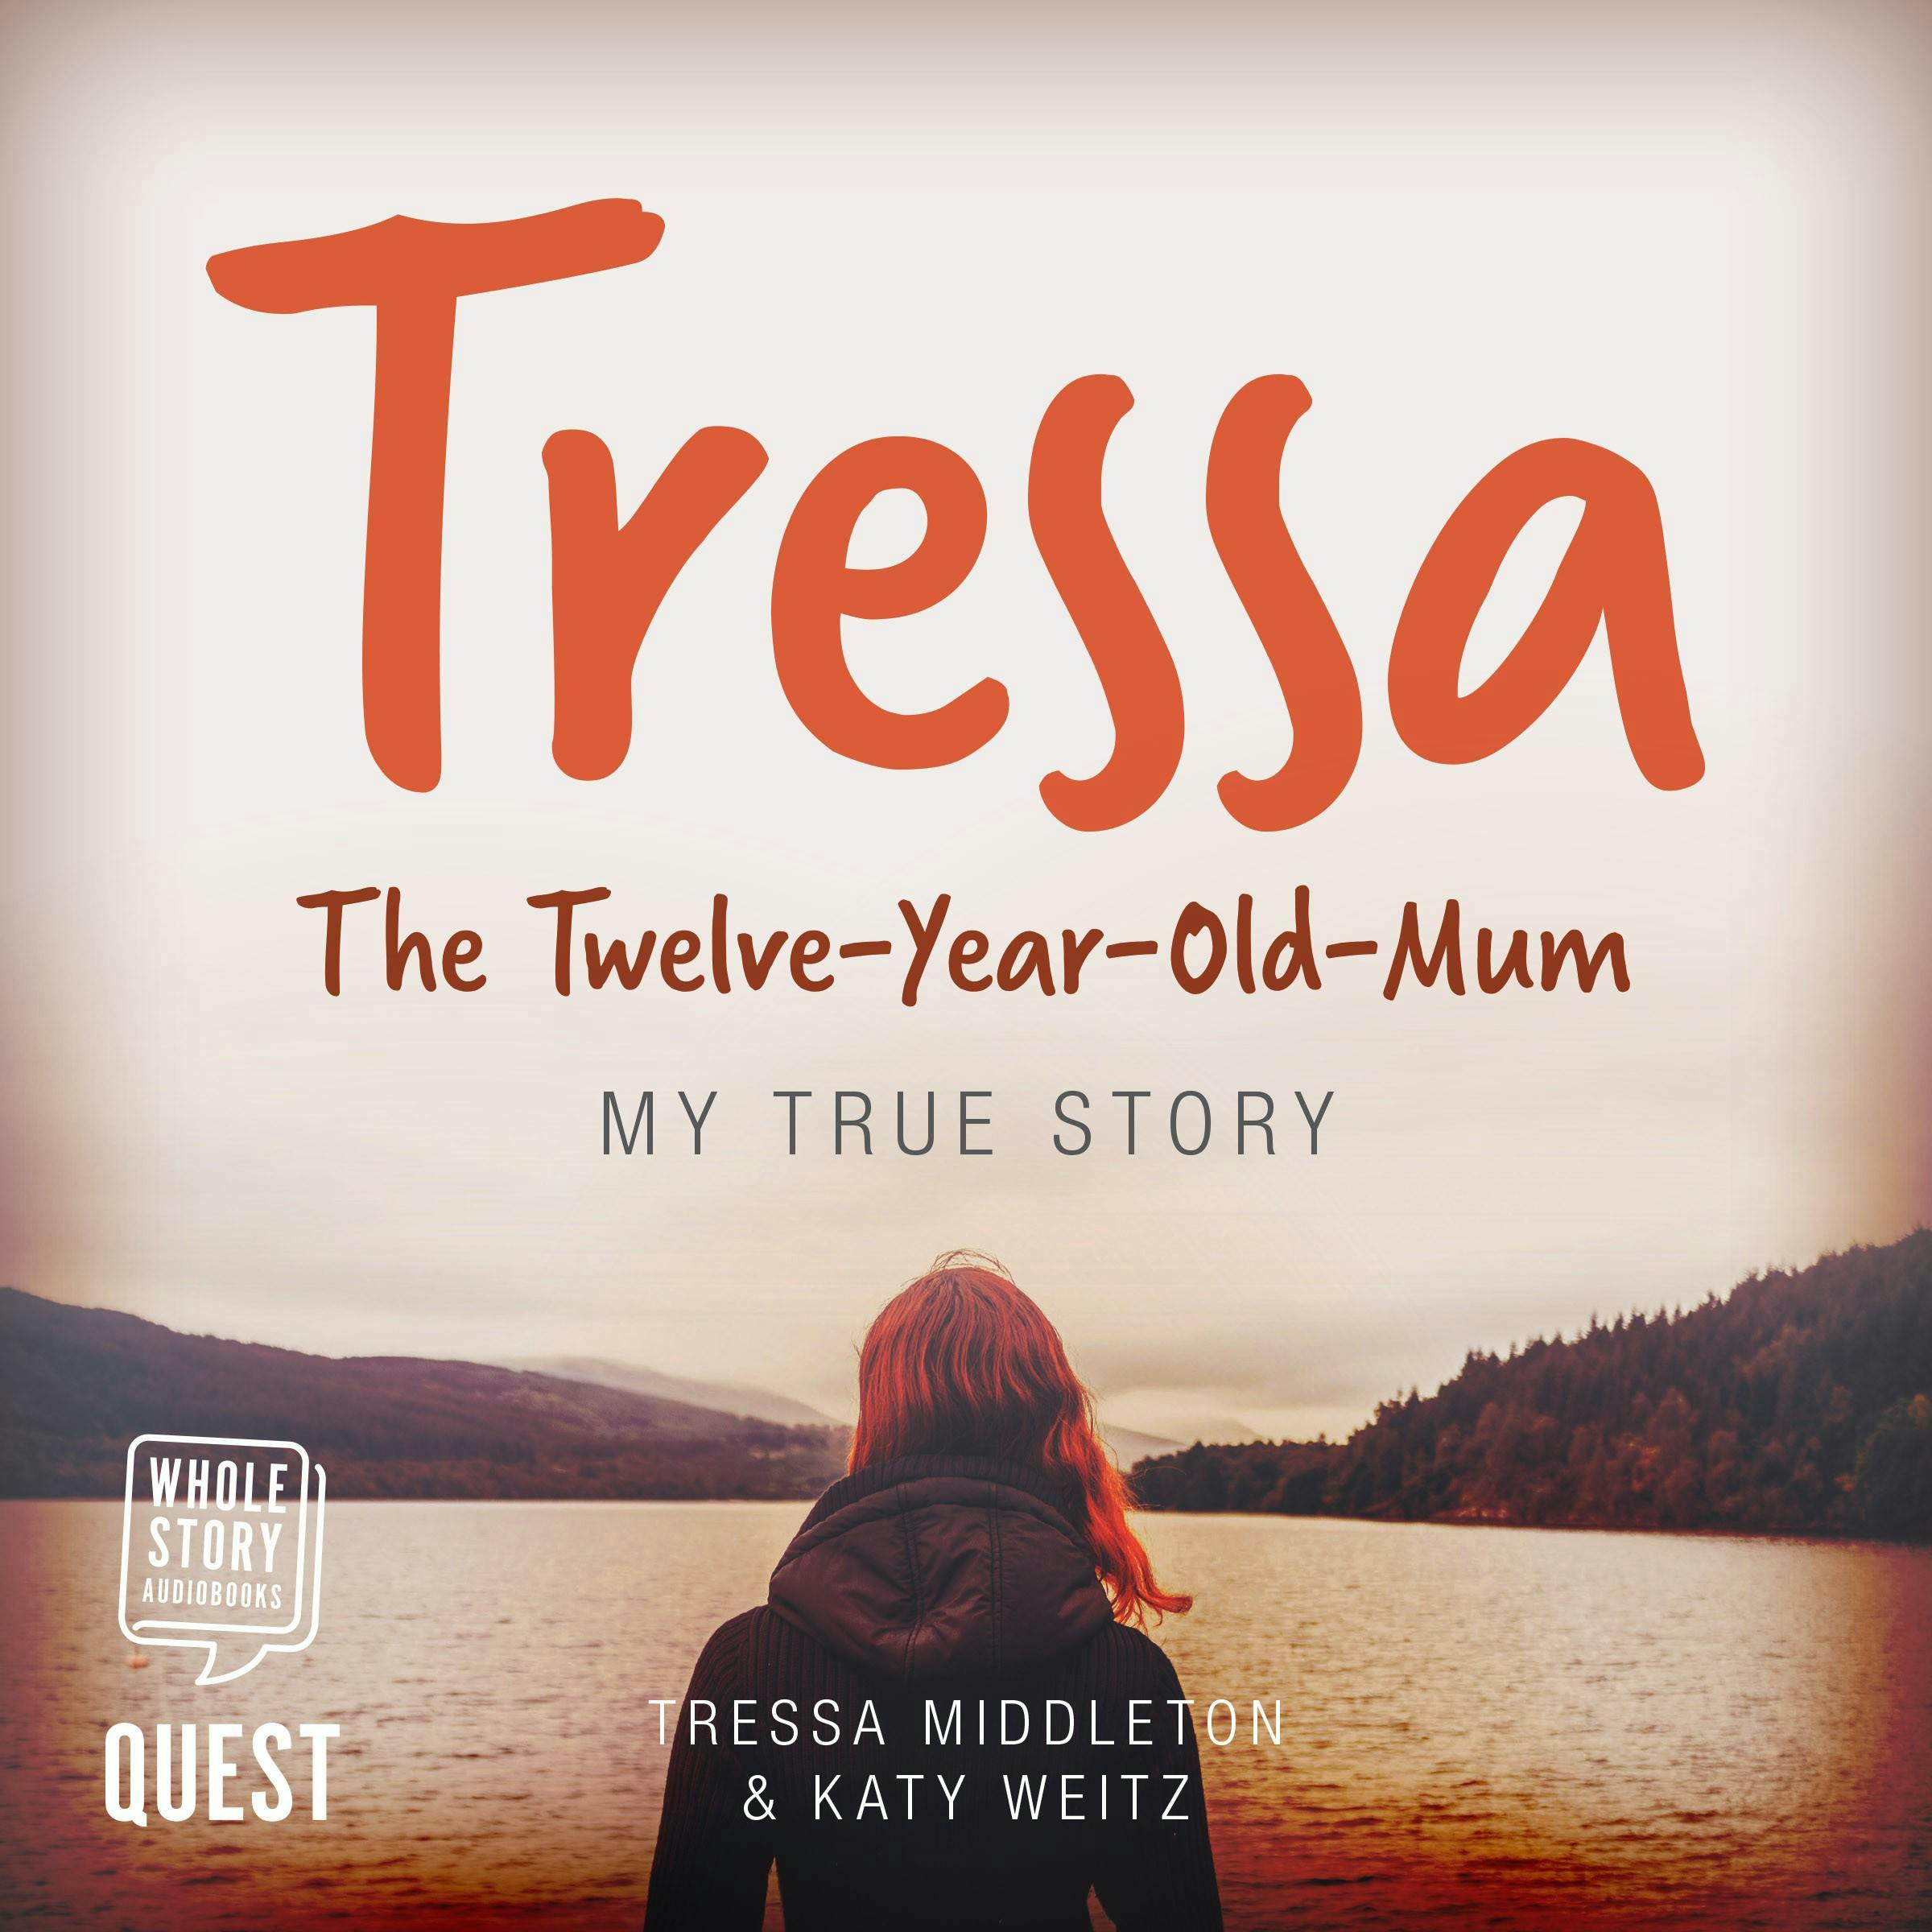 Tressa: The 12-Year-Old Mum - Tressa Middleton